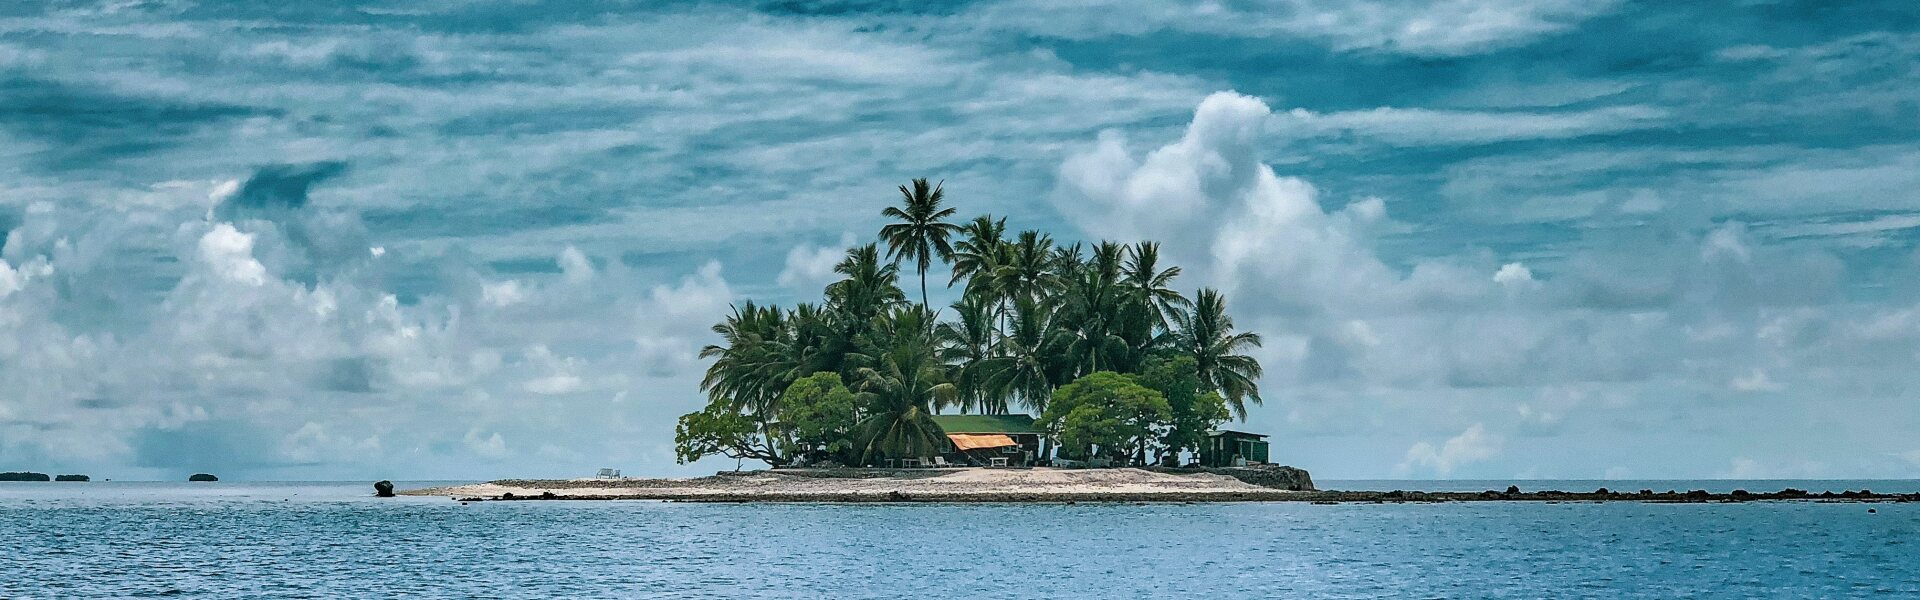 Insel mit Palmen im Meer, Wolken am Himmel